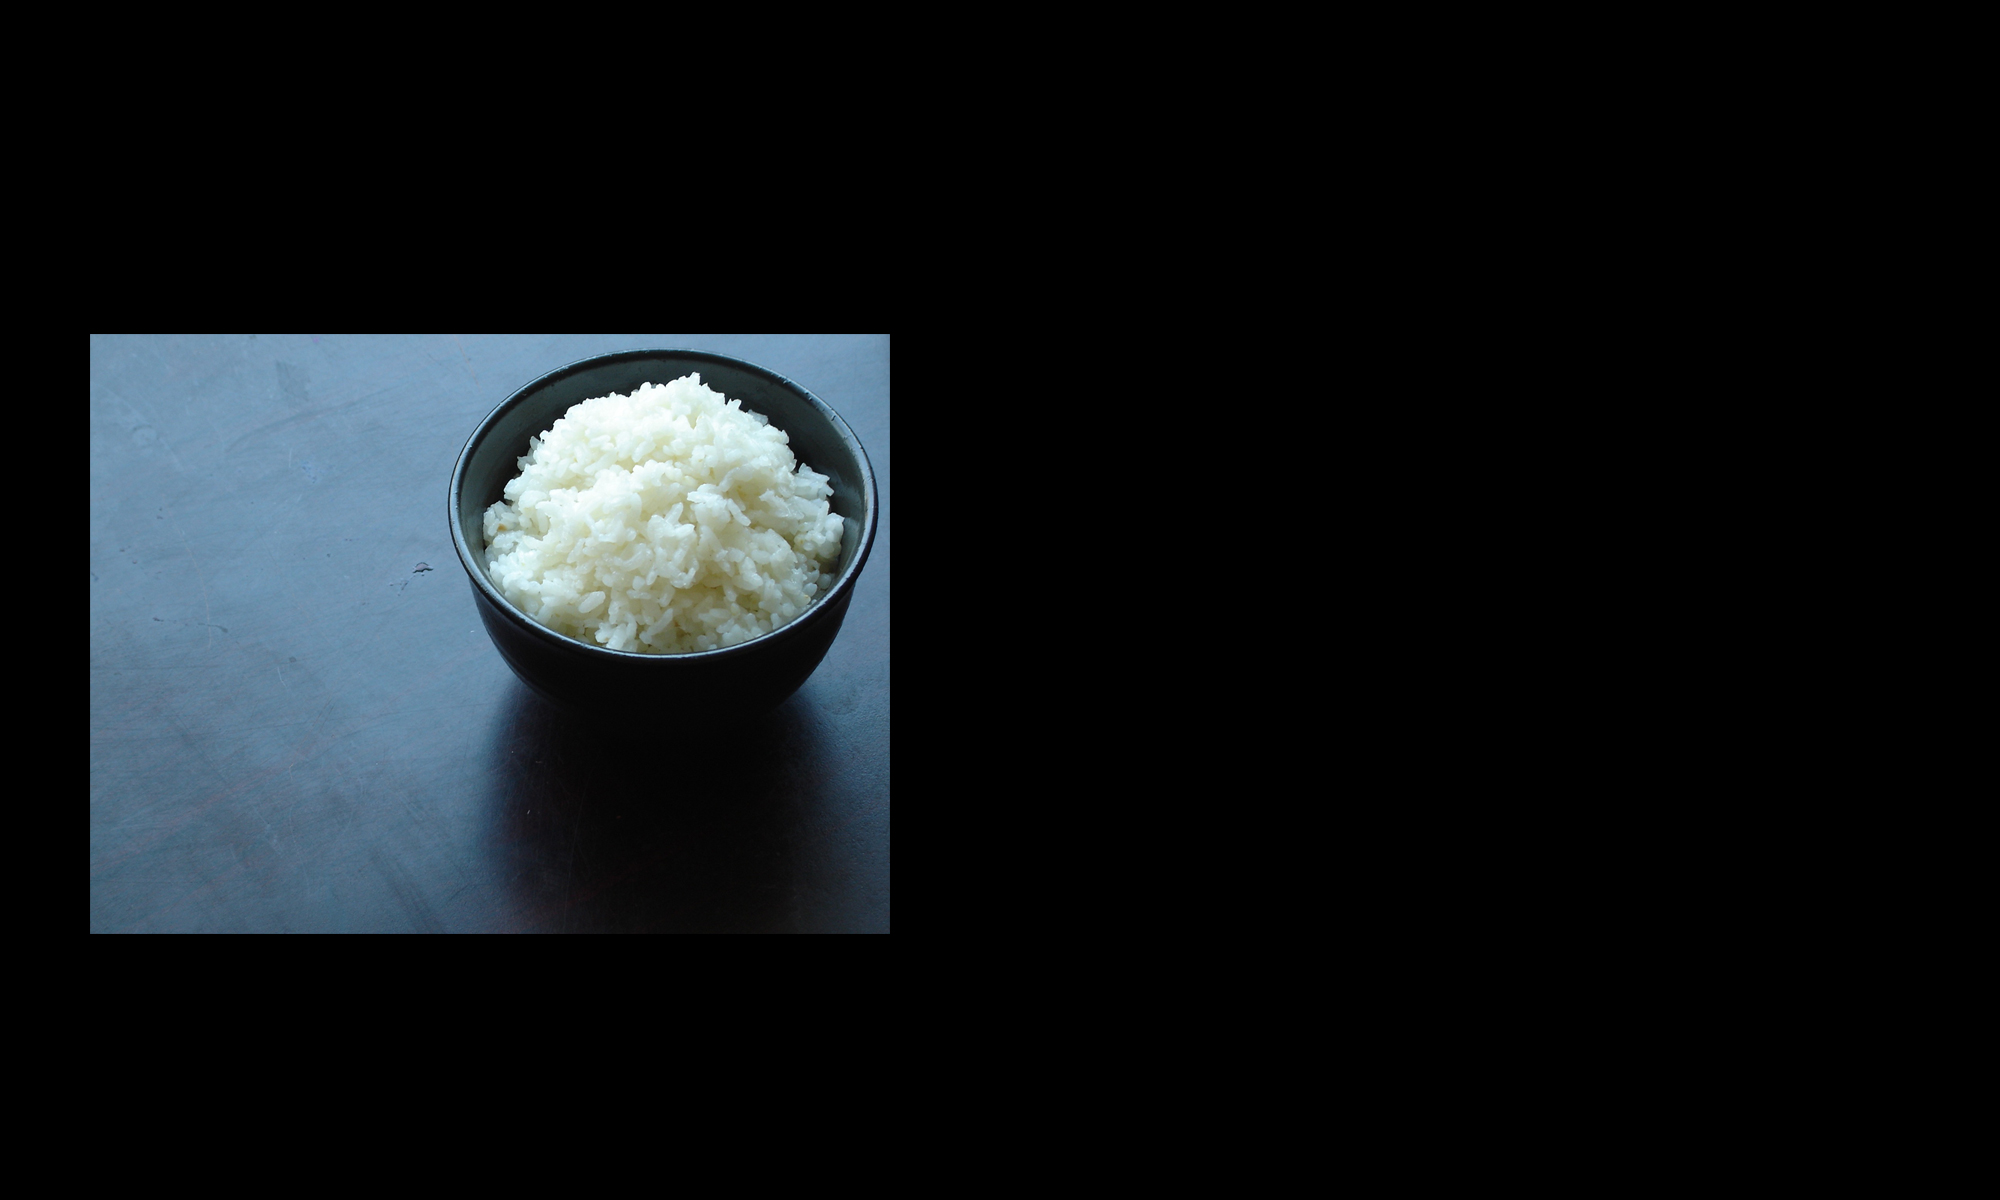 Chinese food – white rice